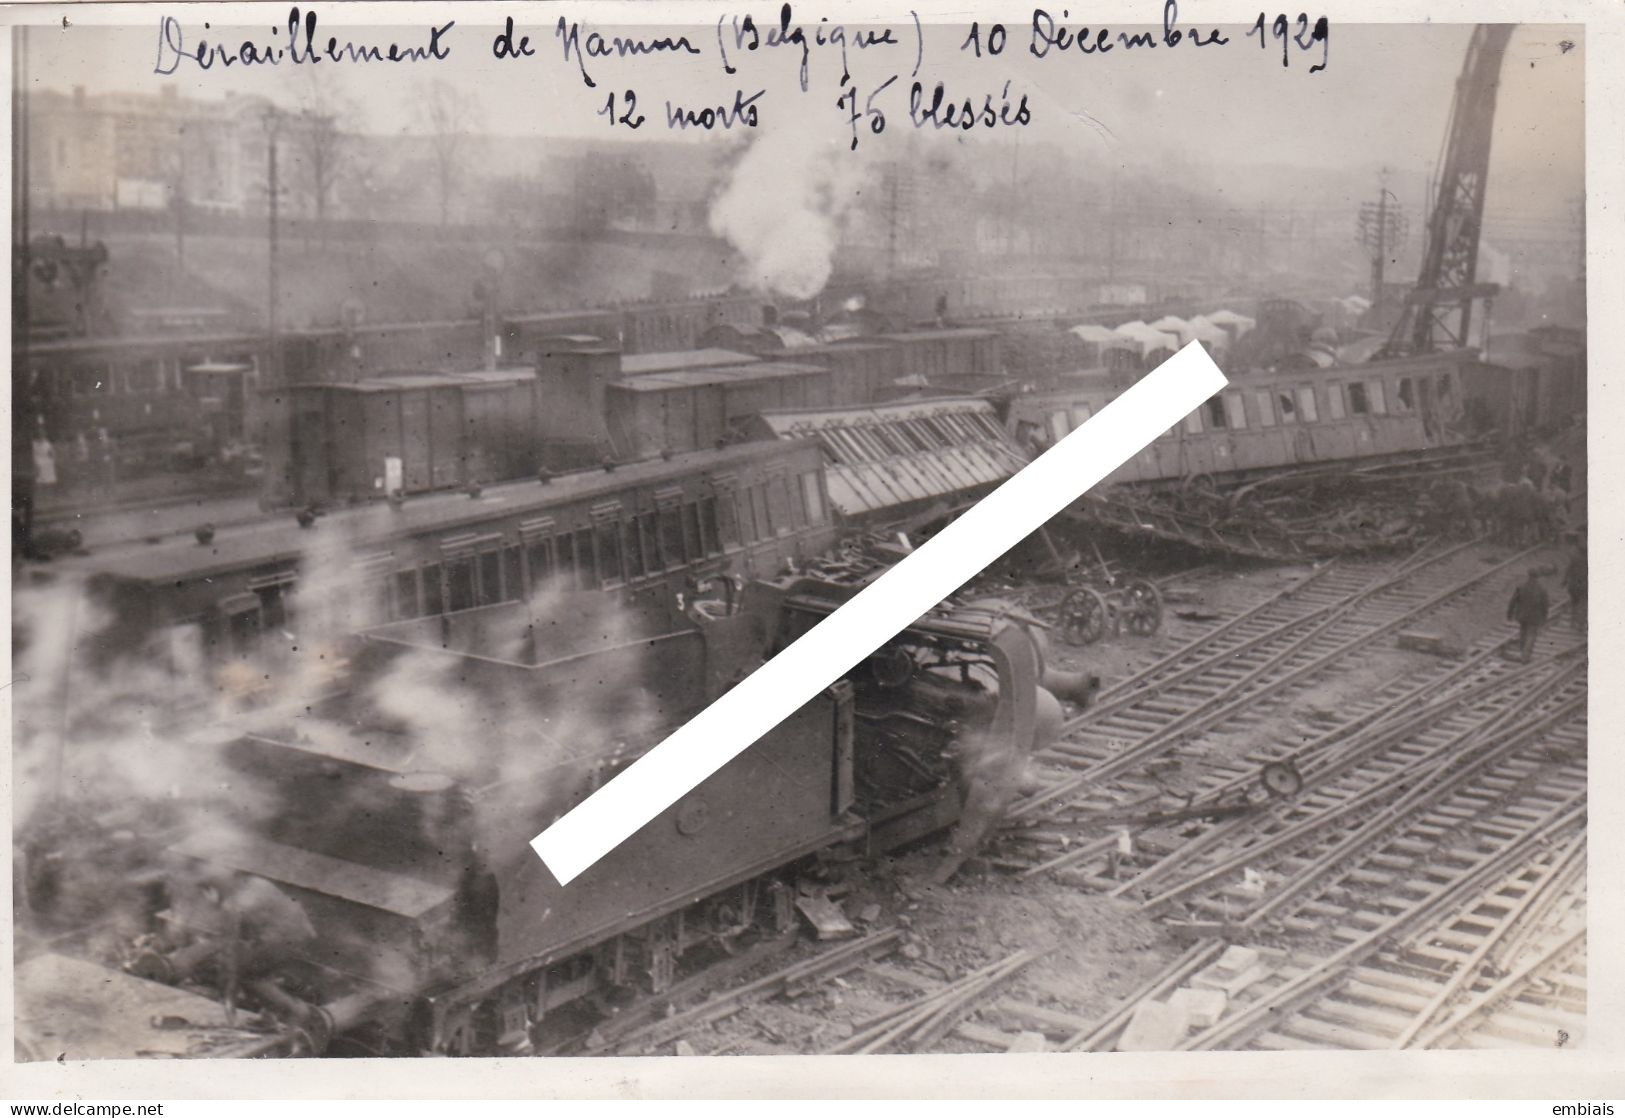 BELGIQUE NAMUR ACCIDENT CHEMIN DE FER 10 Décembre 1929 - Photo Originale D'un Déraillement 12 Morts, 75 Blessés - Trains